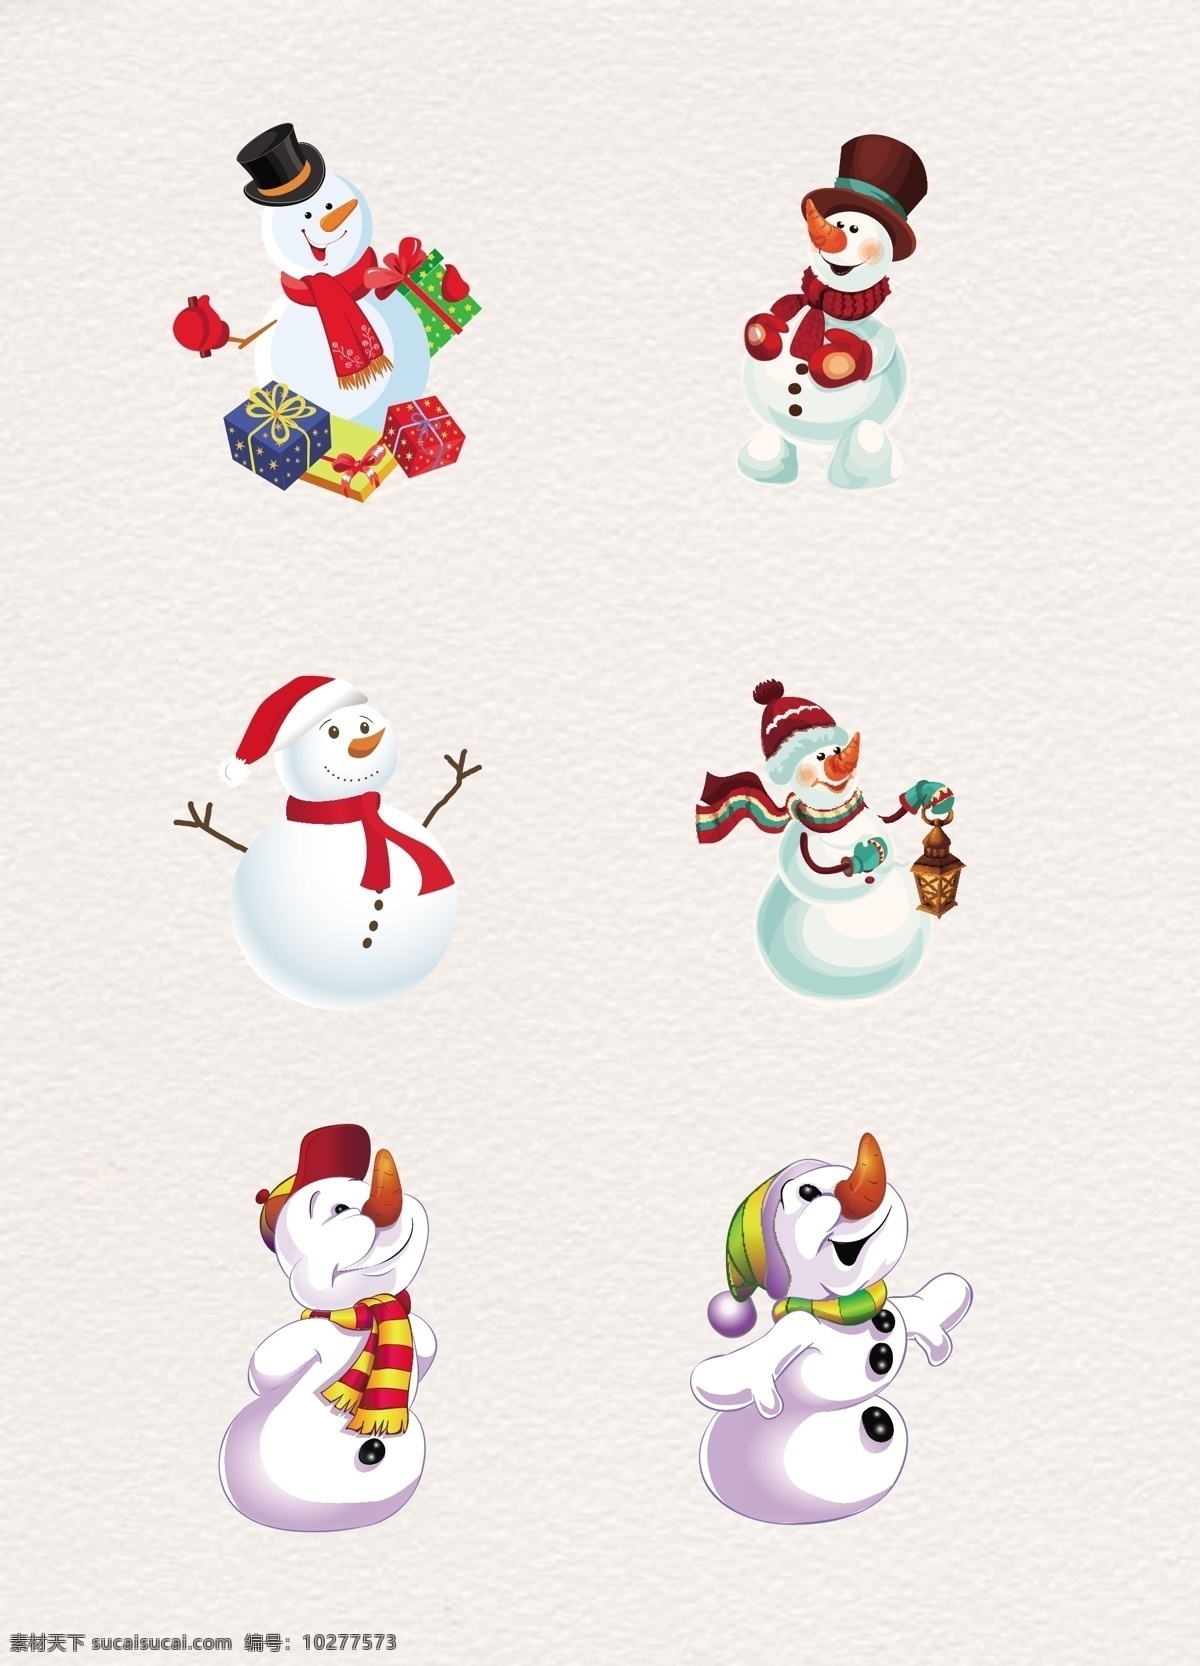 可爱 圣诞 雪人 矢量 元素 圣诞素材 卡通雪人 圣诞雪人 圣诞节 堆雪人 雪人元素 可爱雪人 冬季元素 圣诞装扮